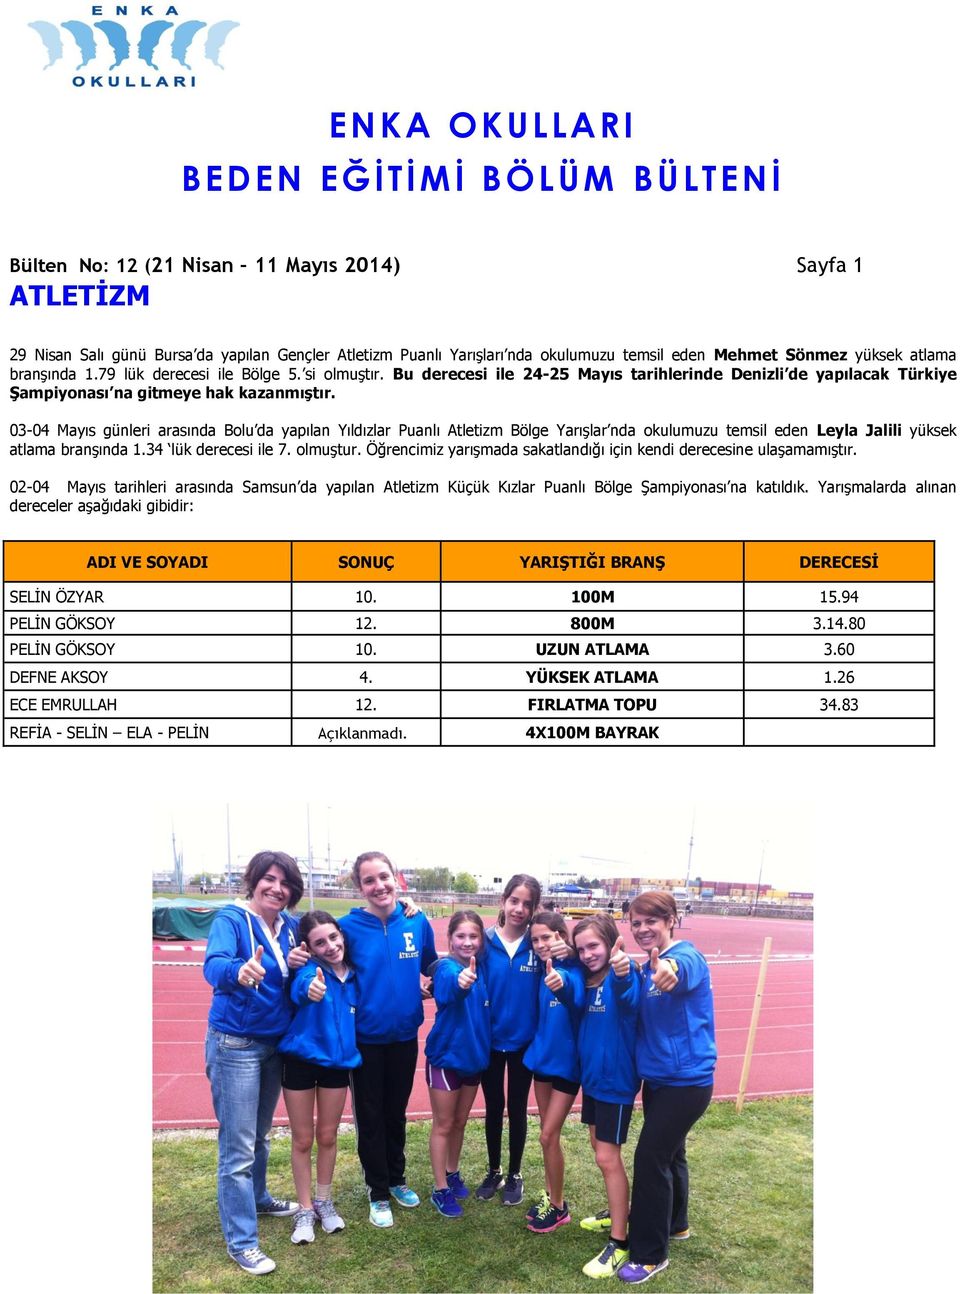 03-04 Mayıs günleri arasında Bolu da yapılan Yıldızlar Puanlı Atletizm Bölge Yarışlar nda okulumuzu temsil eden Leyla Jalili yüksek atlama branşında 1.34 lük derecesi ile 7. olmuştur.